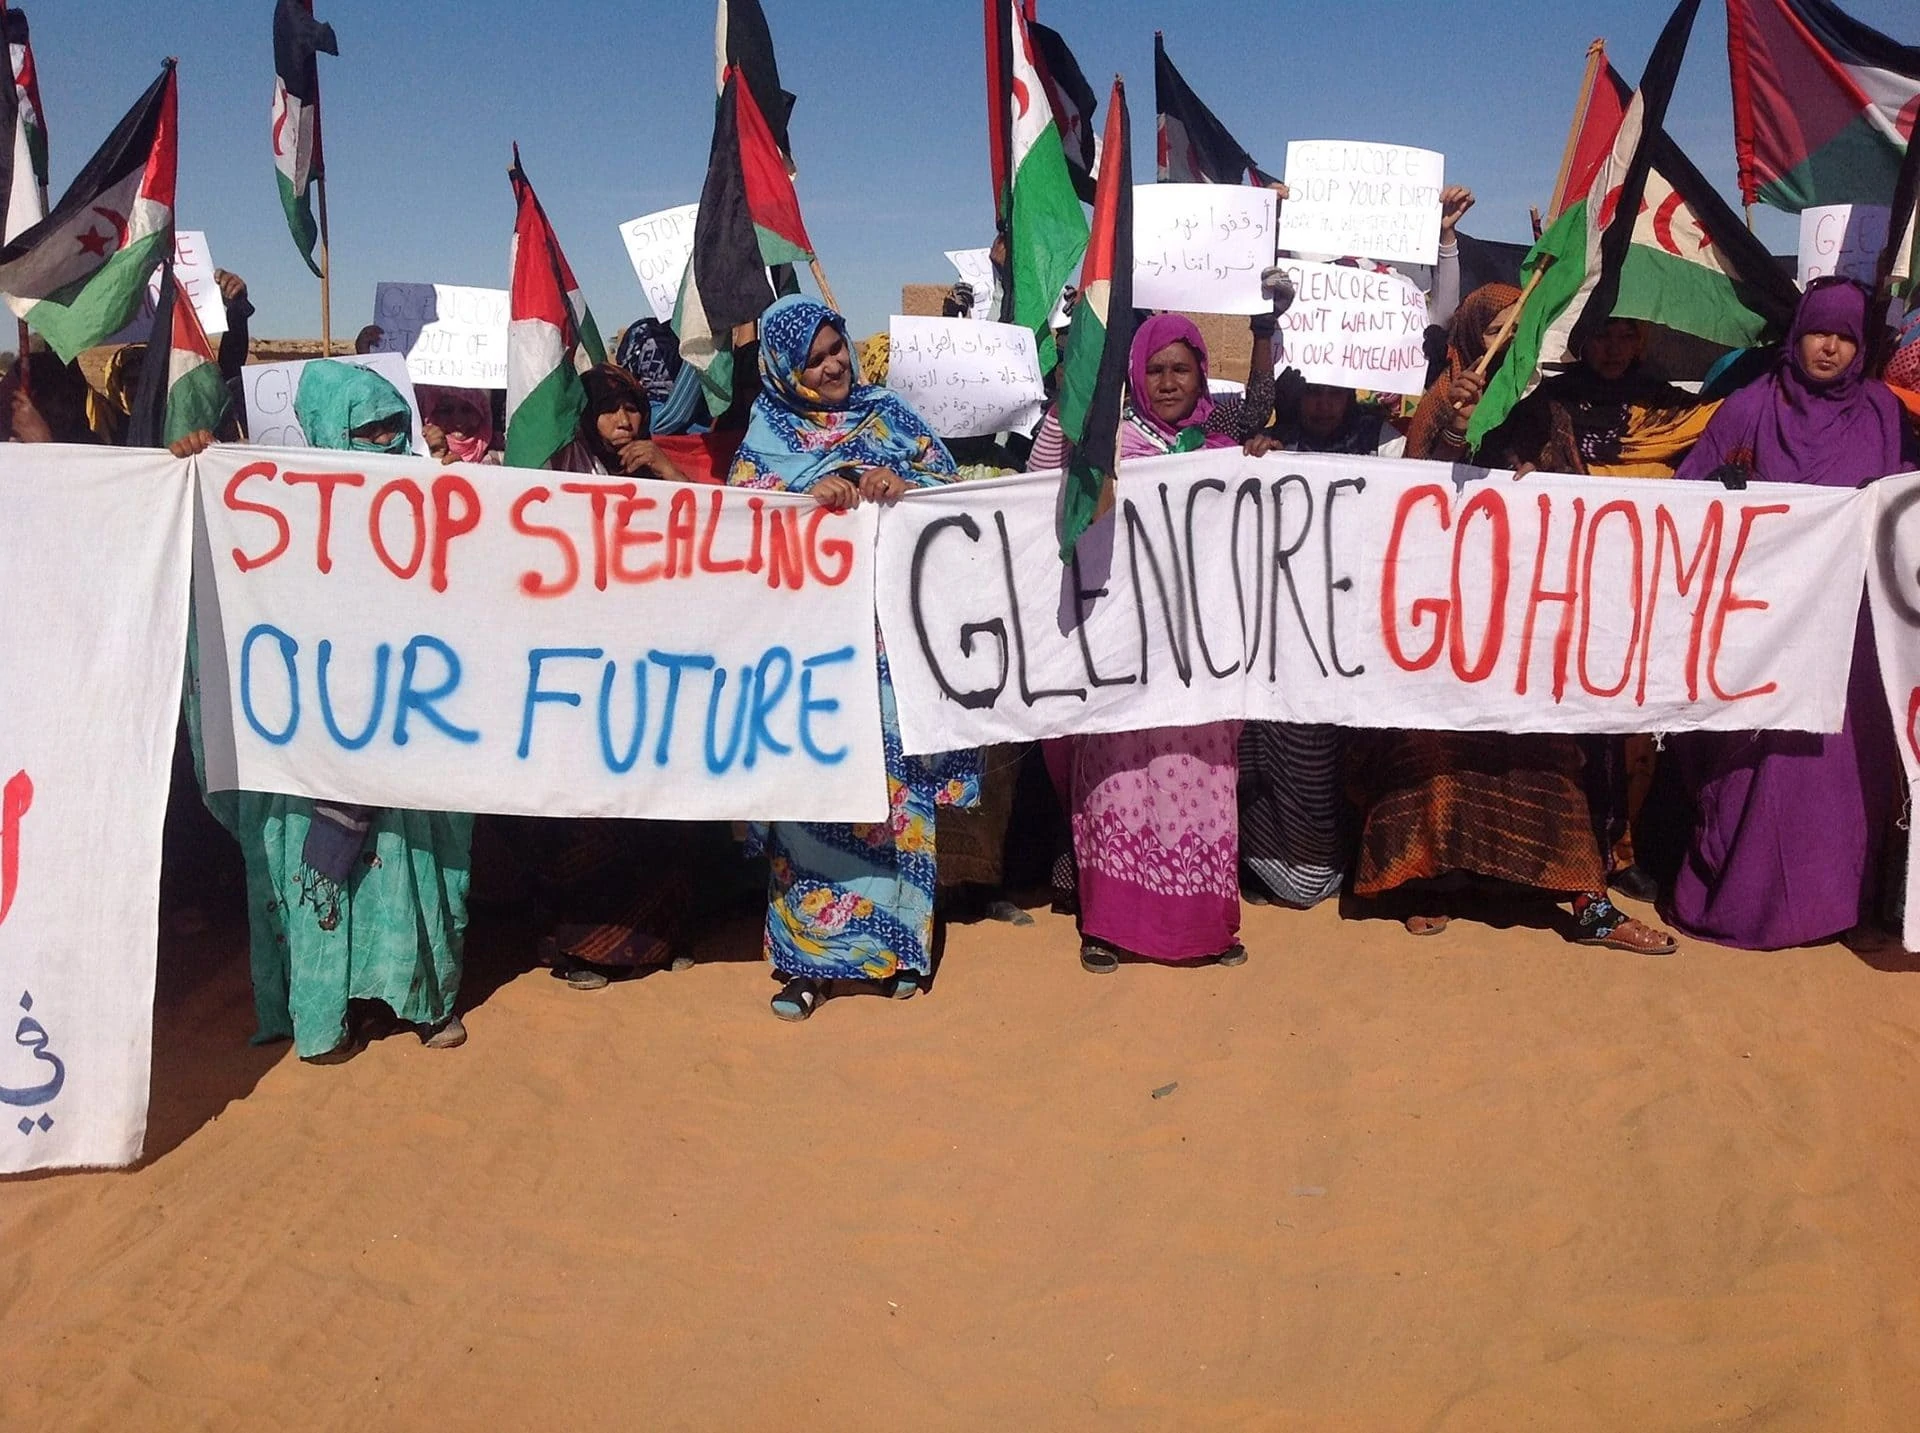 Sahraouis demonstrieren mit Transparenten: Glencore go home!